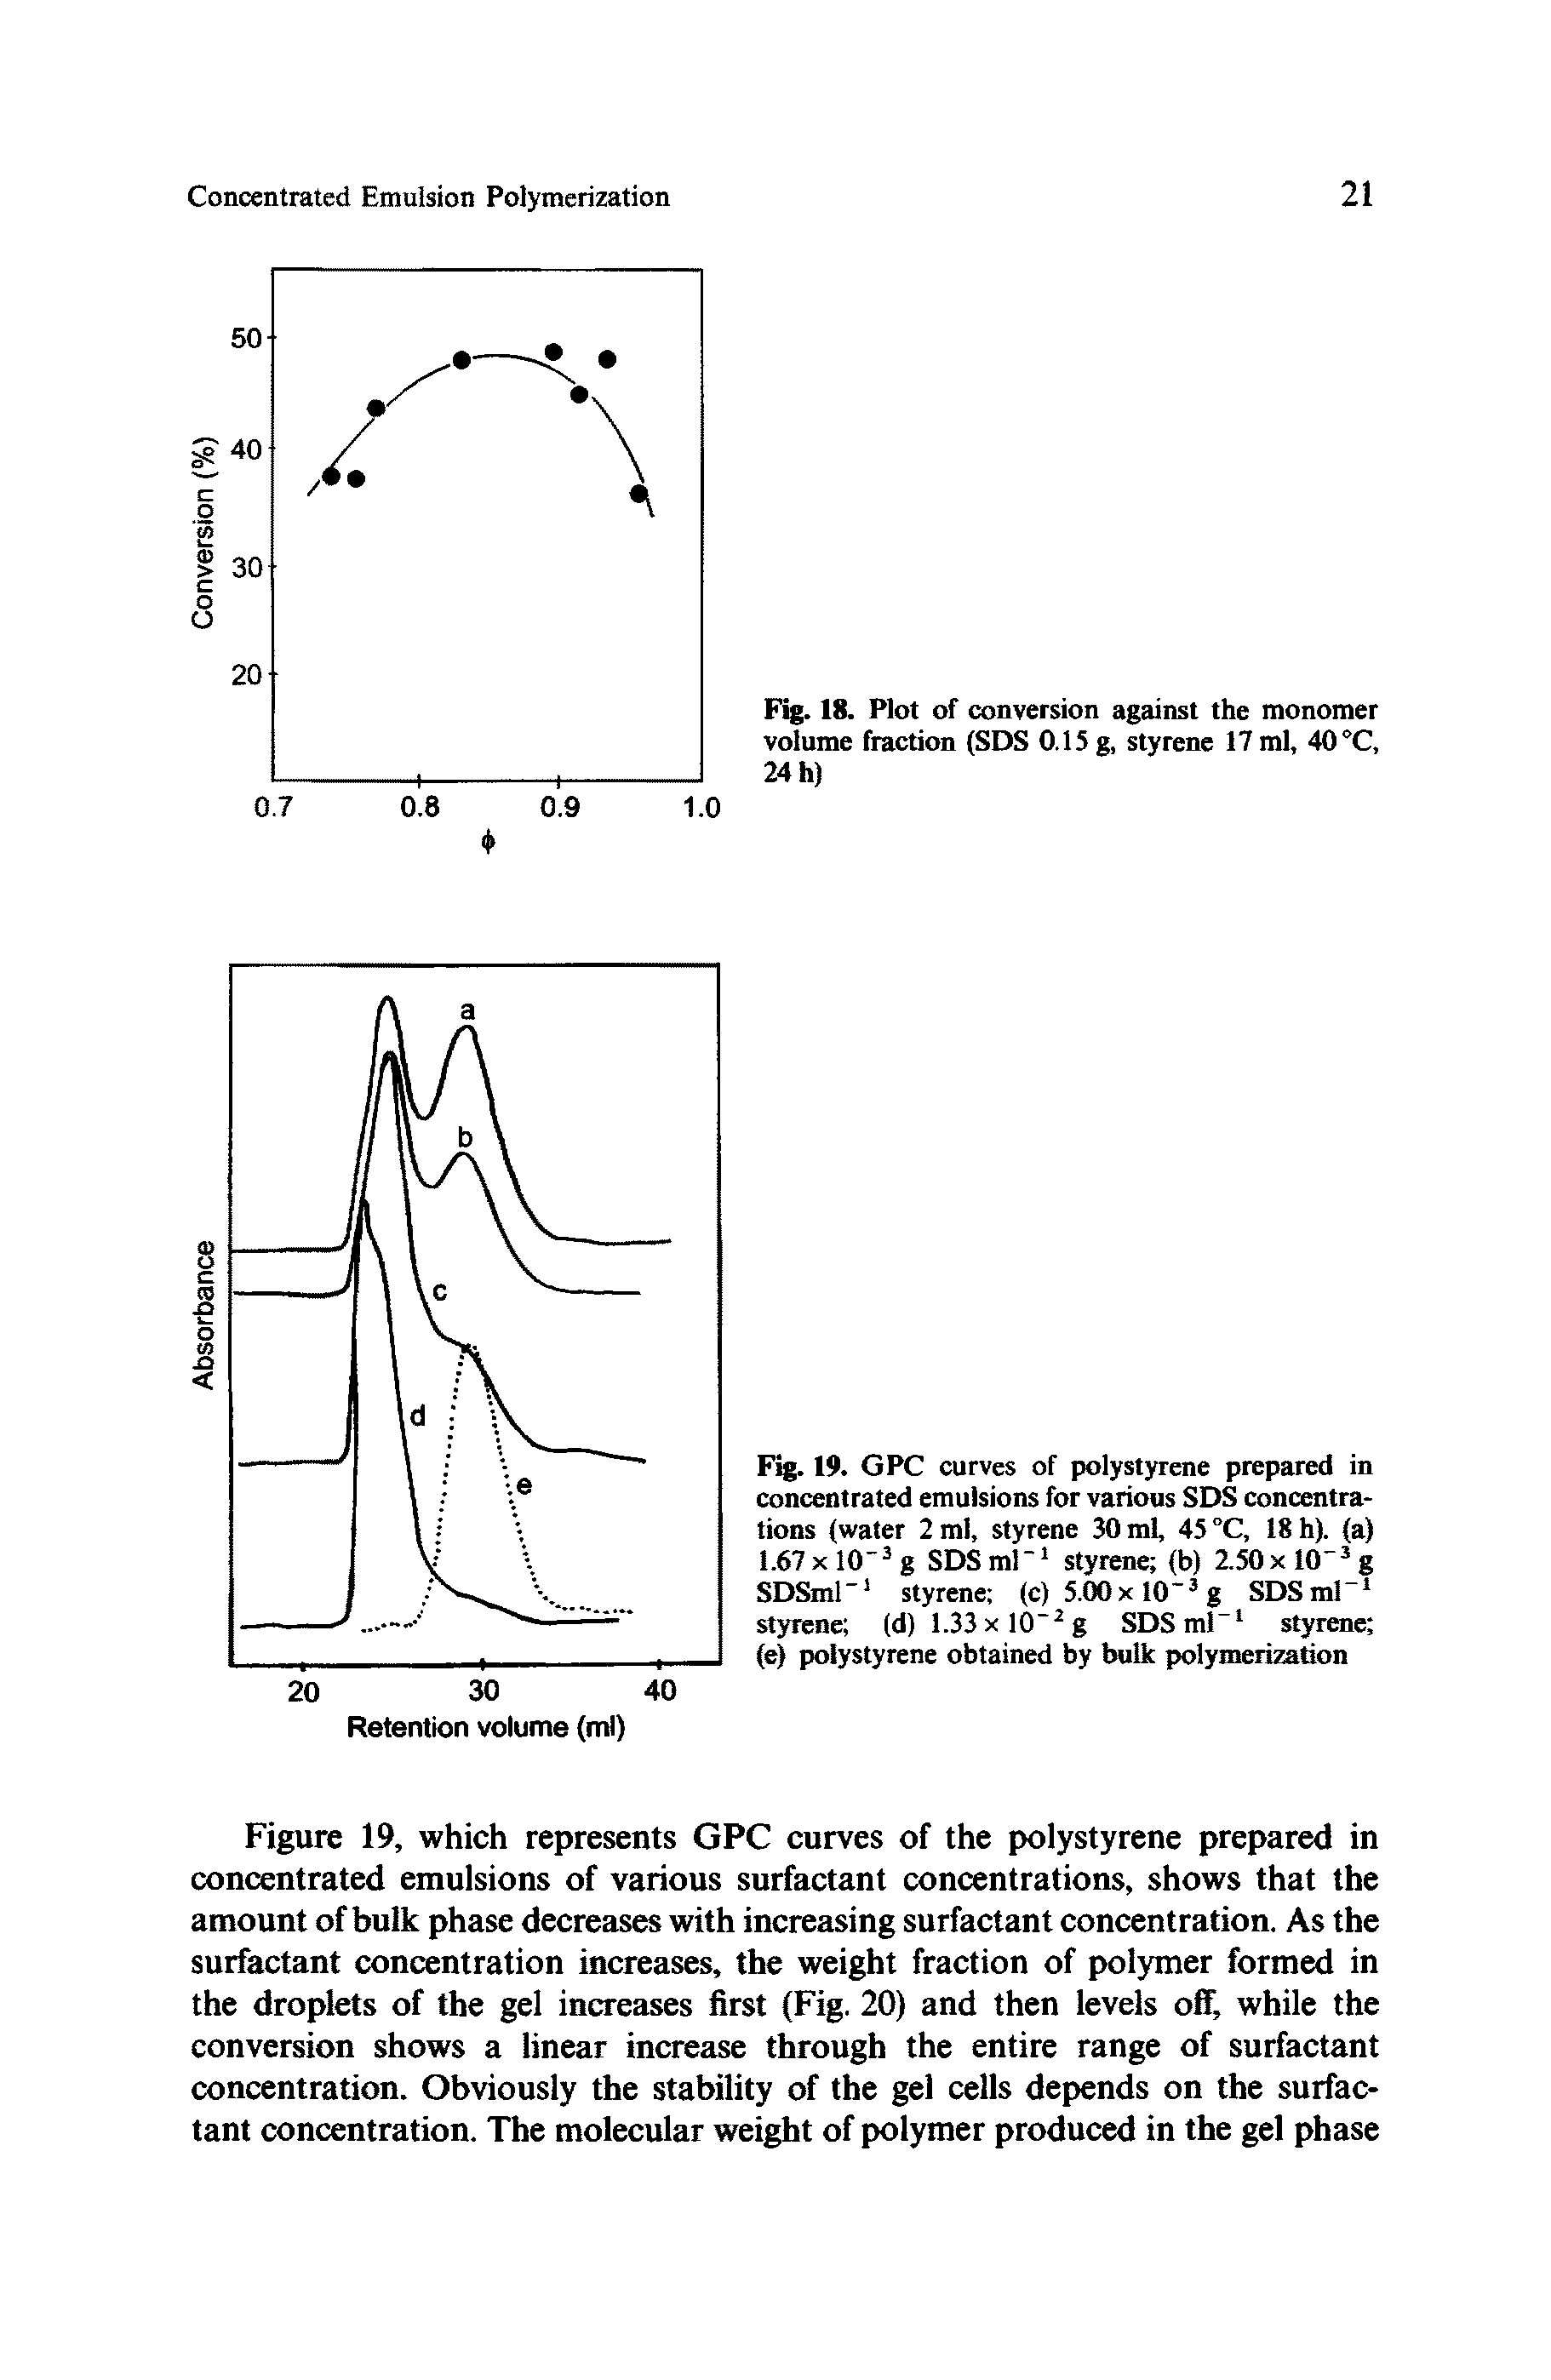 Fig. 18. Plot of conversion against the monomer volume fraction (SDS 0.15 g, styrene 17 ml, 40 °C, 24 h)...